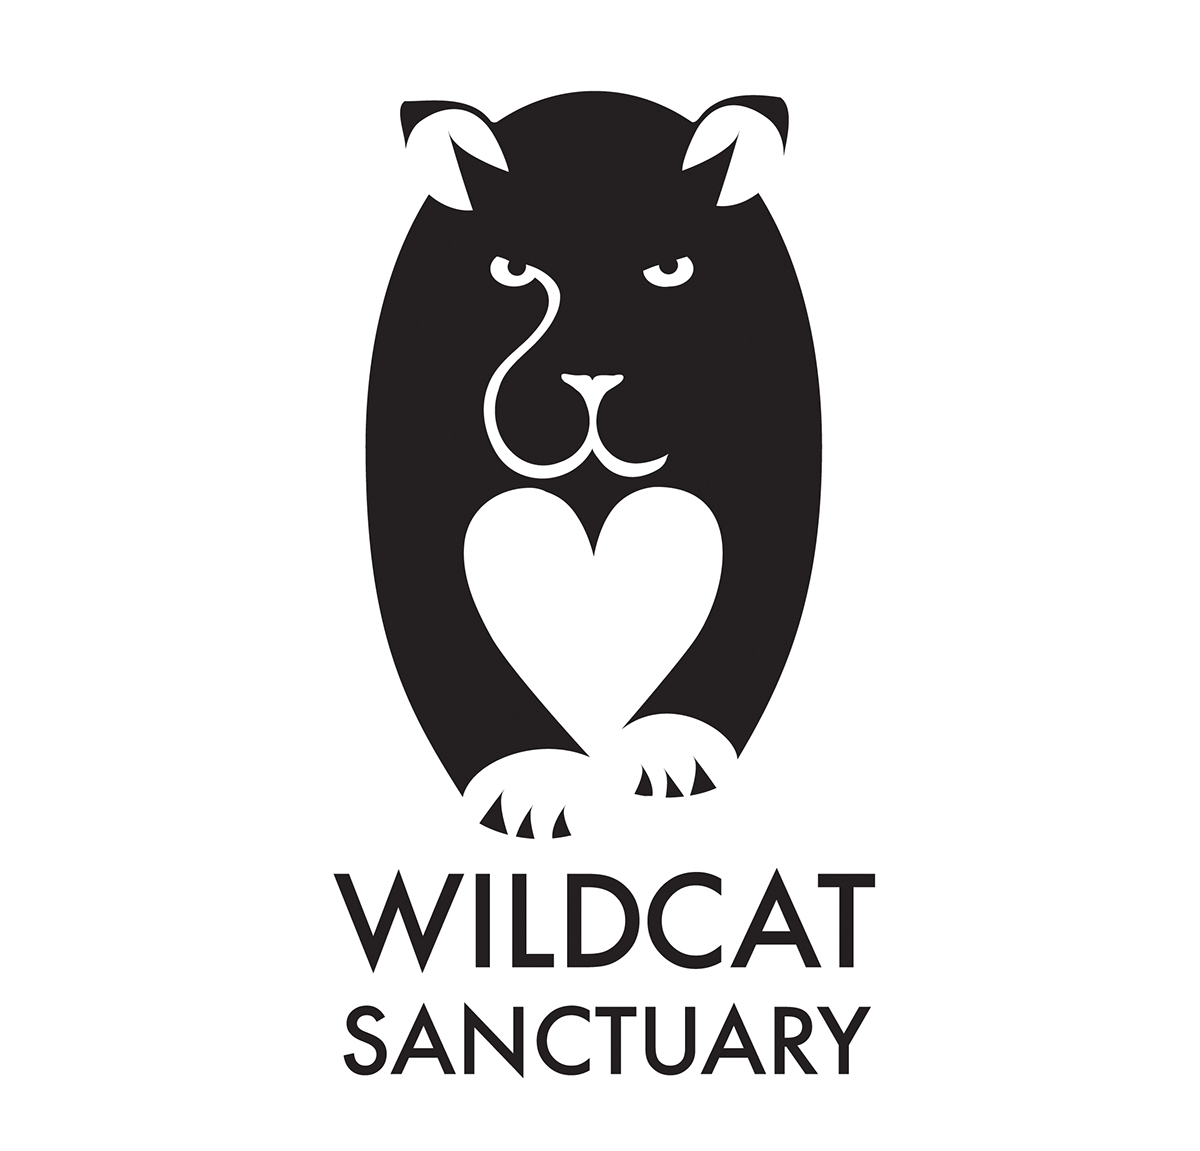 wildcat panther tiger lion Pet non-profit sanctuary